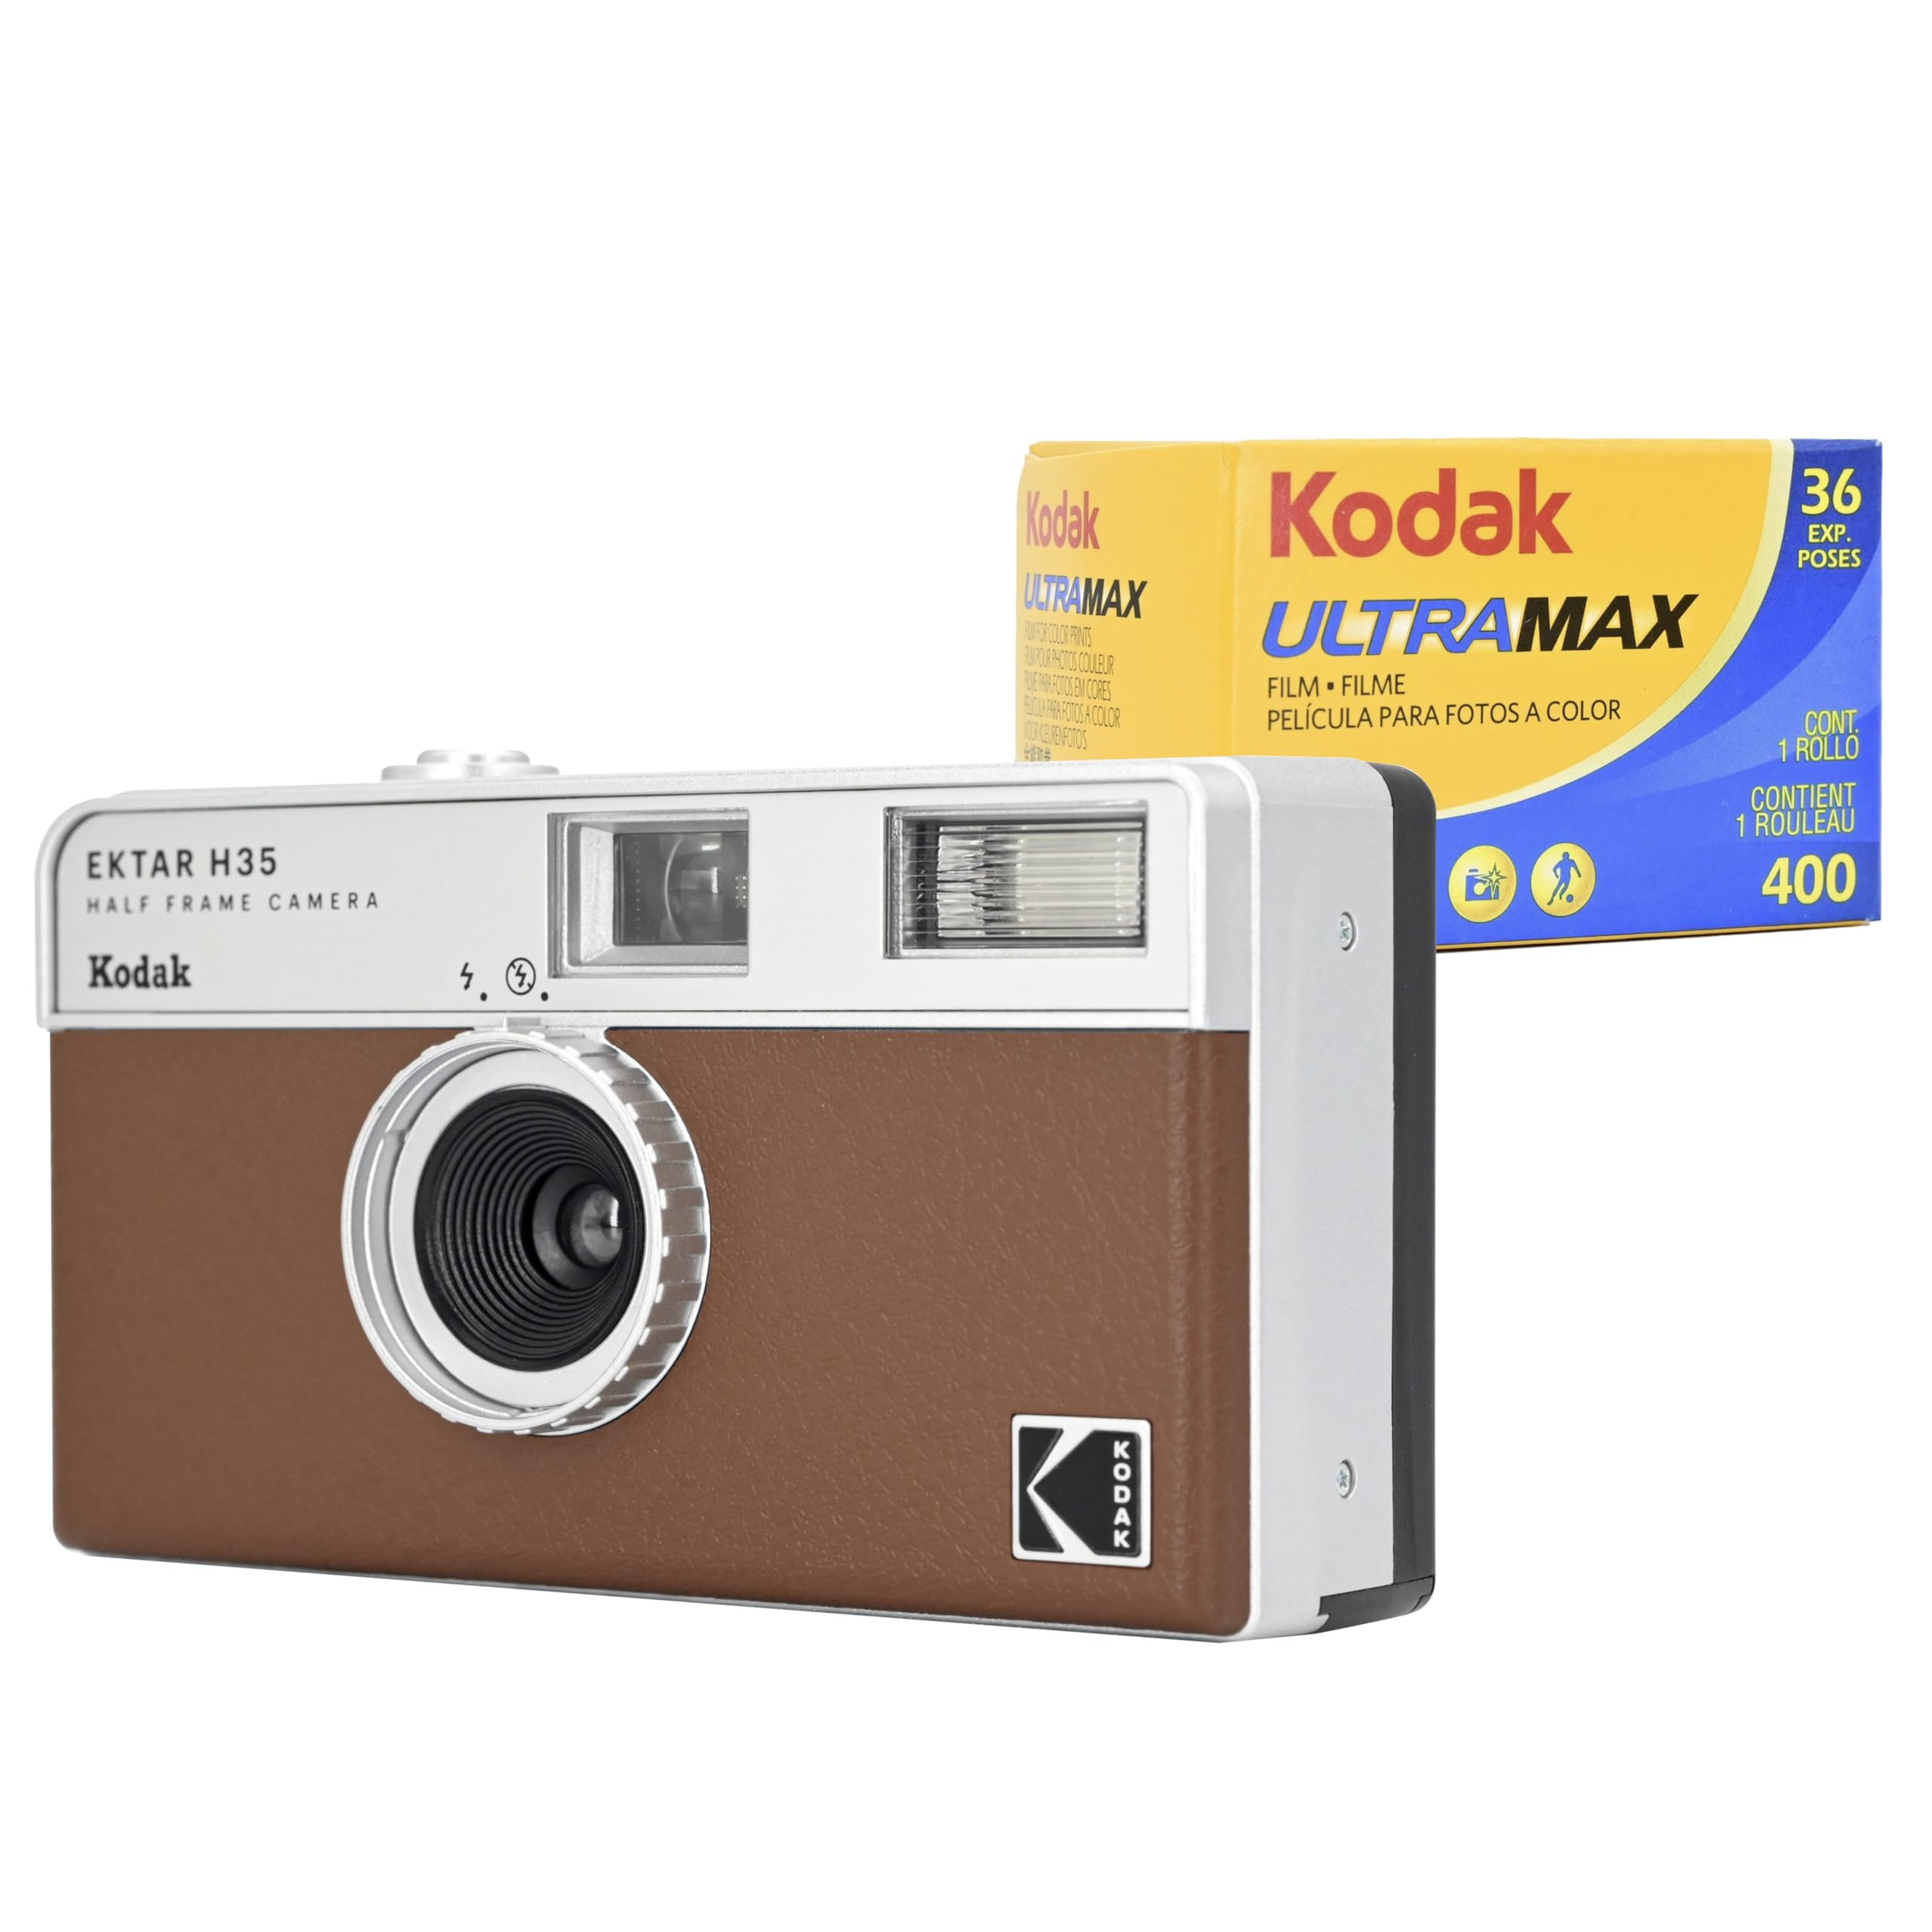 KODAK EKTAR H35 ハーフフレームフィルムカメラ (ブラウン) Kodak Ultramax 400/36EXP 35mmロールフィルムセット